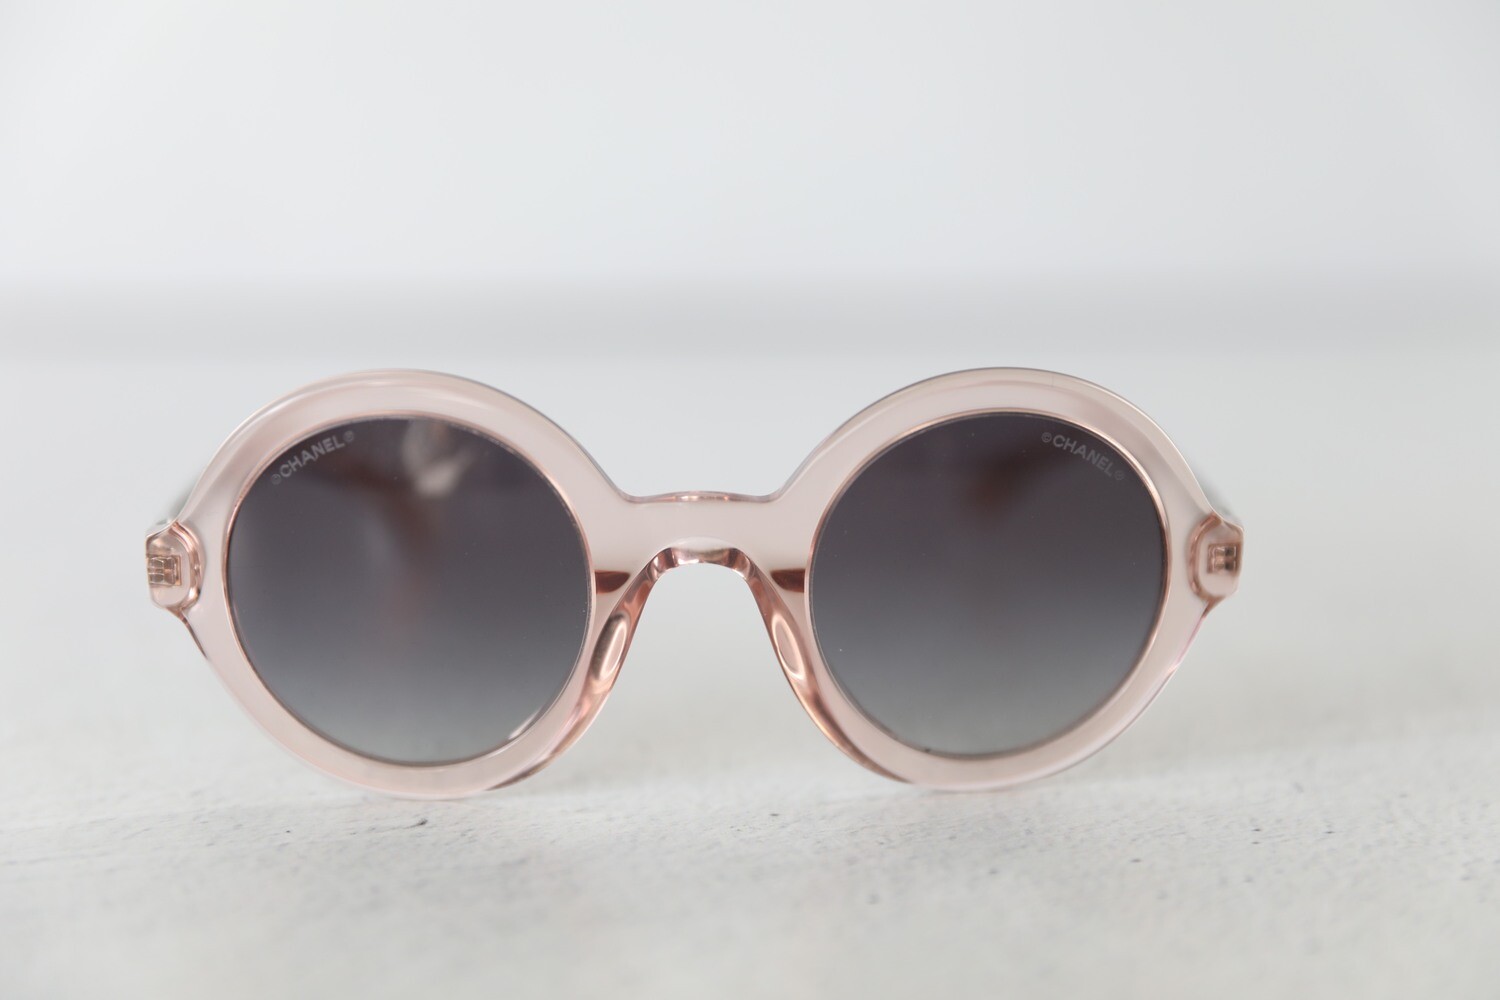 Chanel Sunglasses Round, Pink, New in Box WA001 - Julia Rose Boston